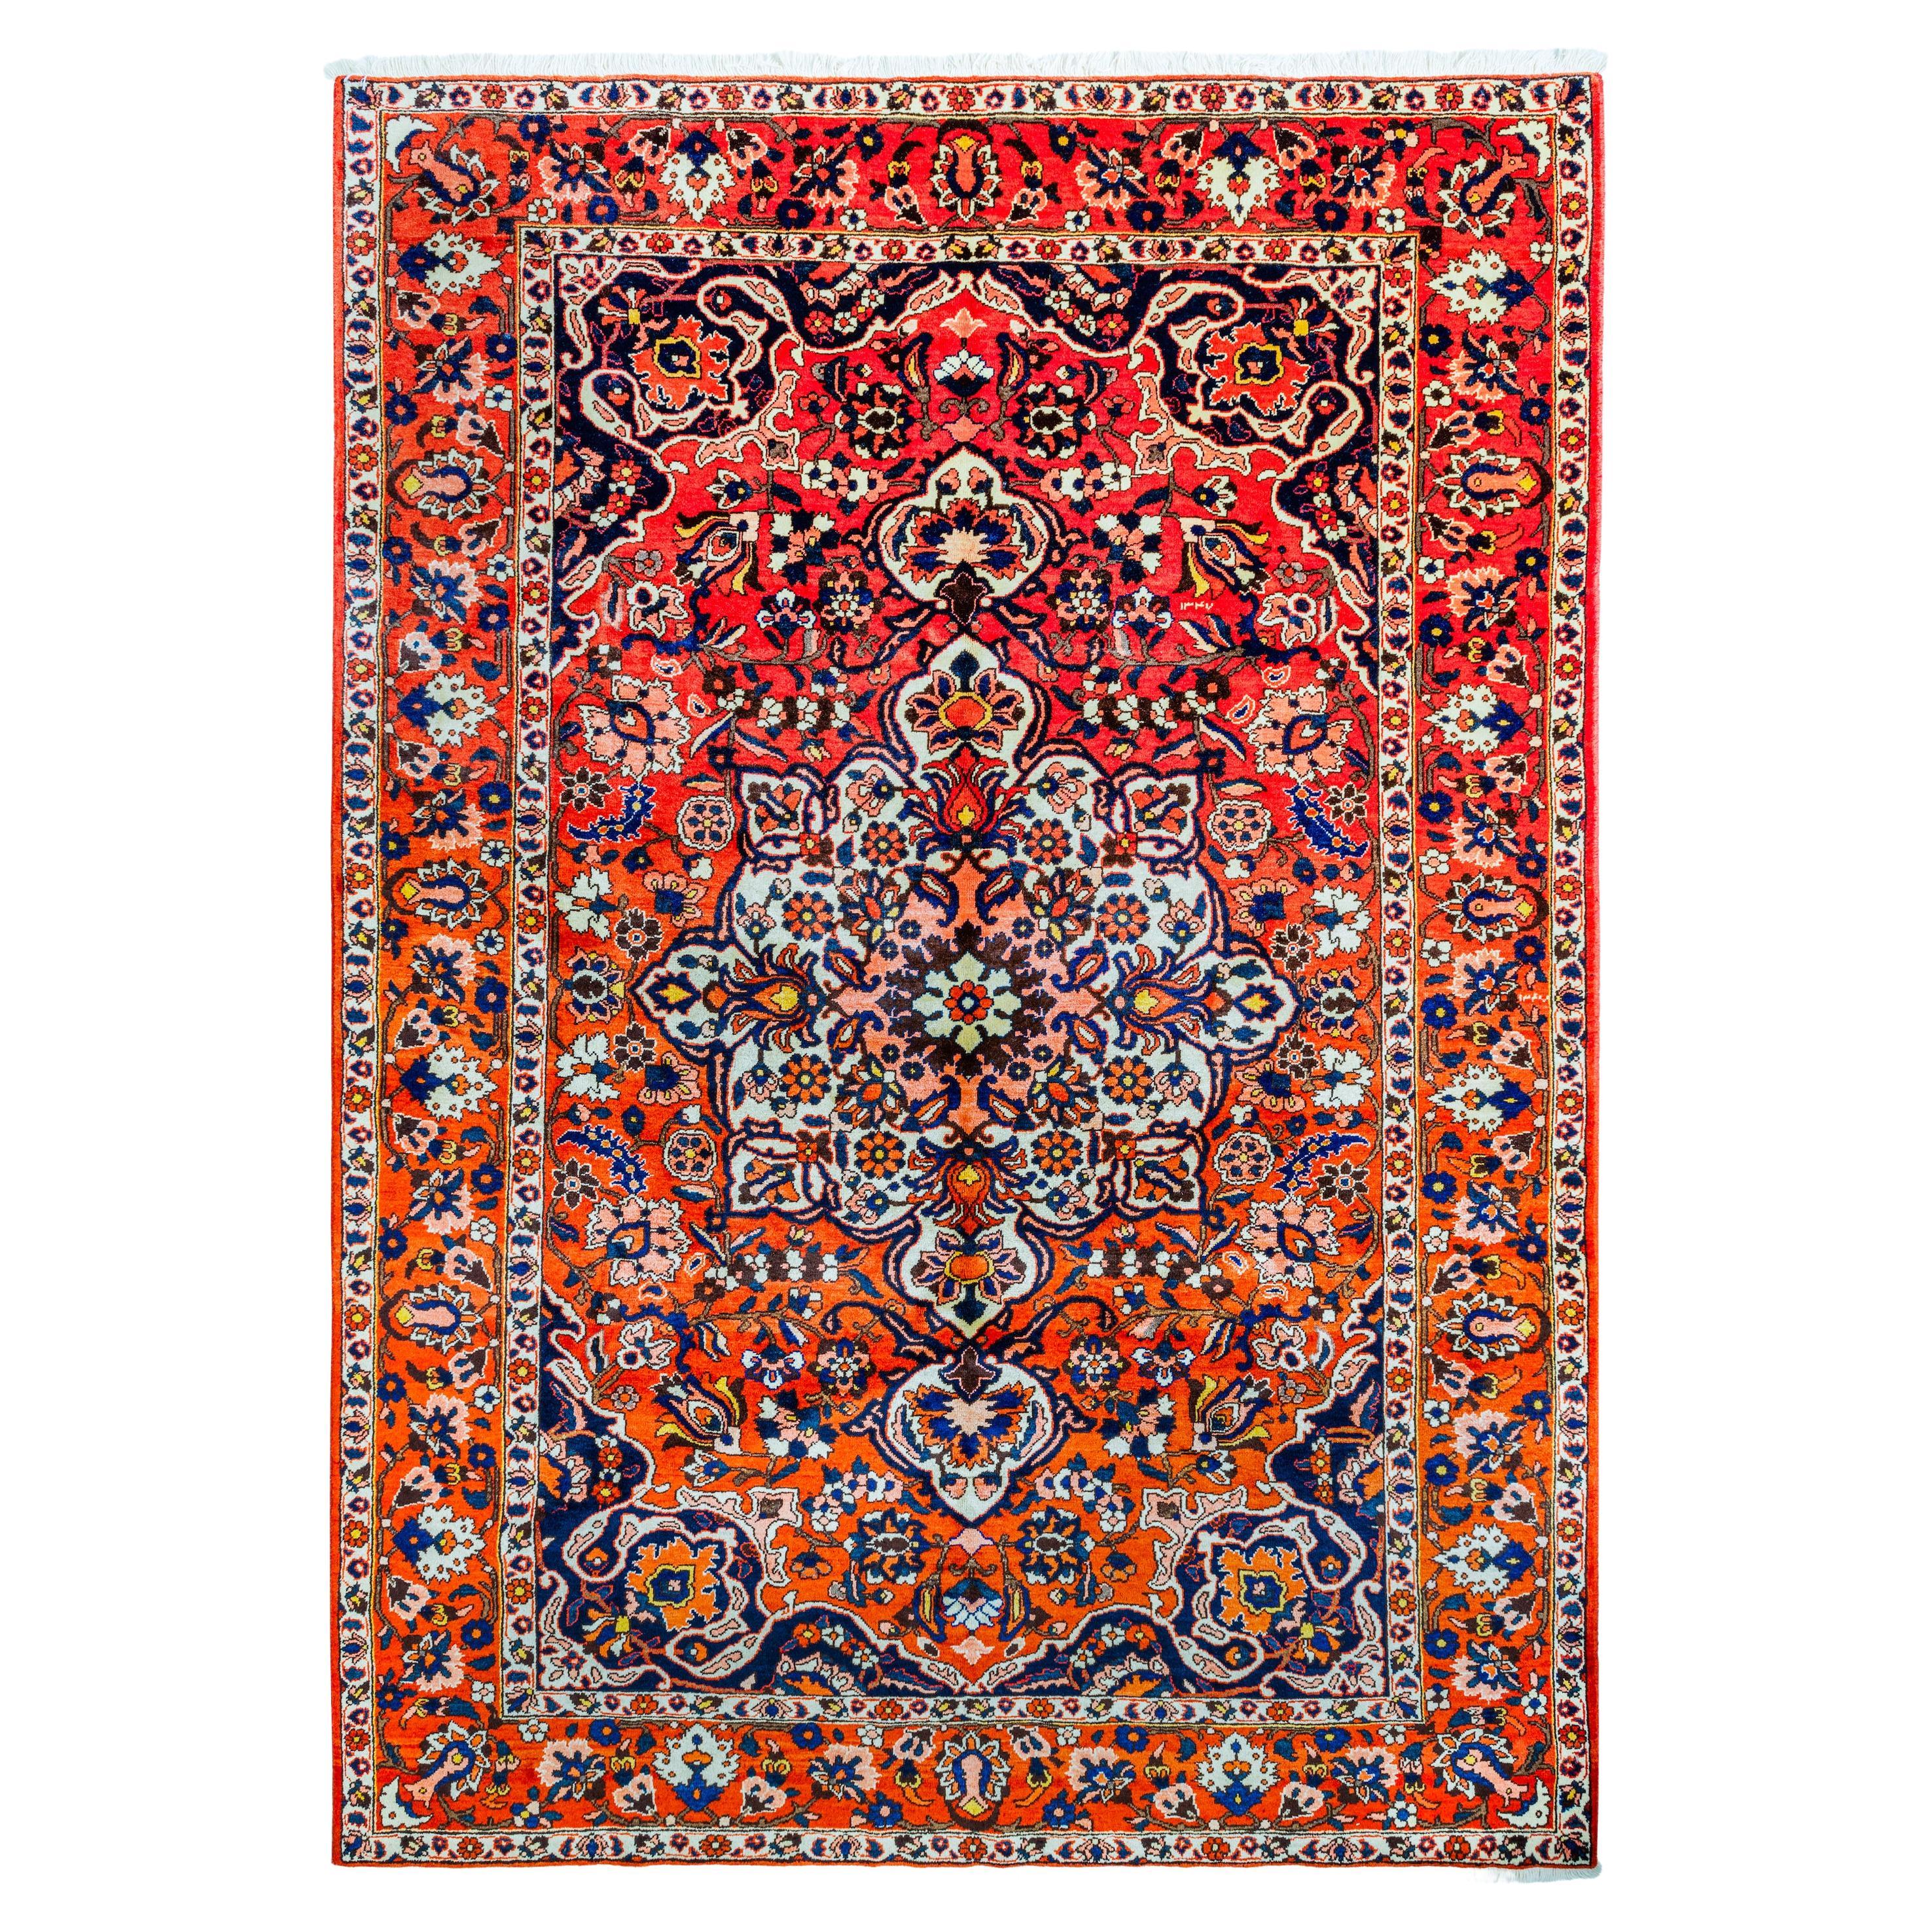 Authentique tapis persan orange 10' 0" X 7' 1"